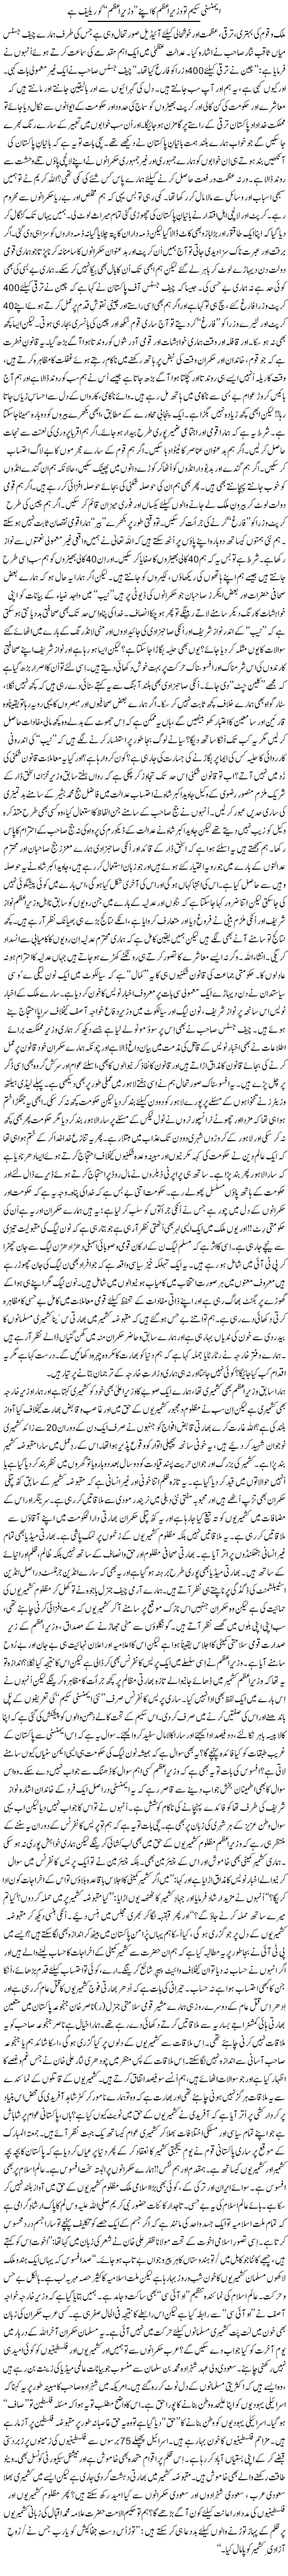 Amnesty Scheme To Wazir e Azam Ka Apne Wazir e Azam Ko Relief Hai | Rehmat Ali Razi | Daily Urdu Columns